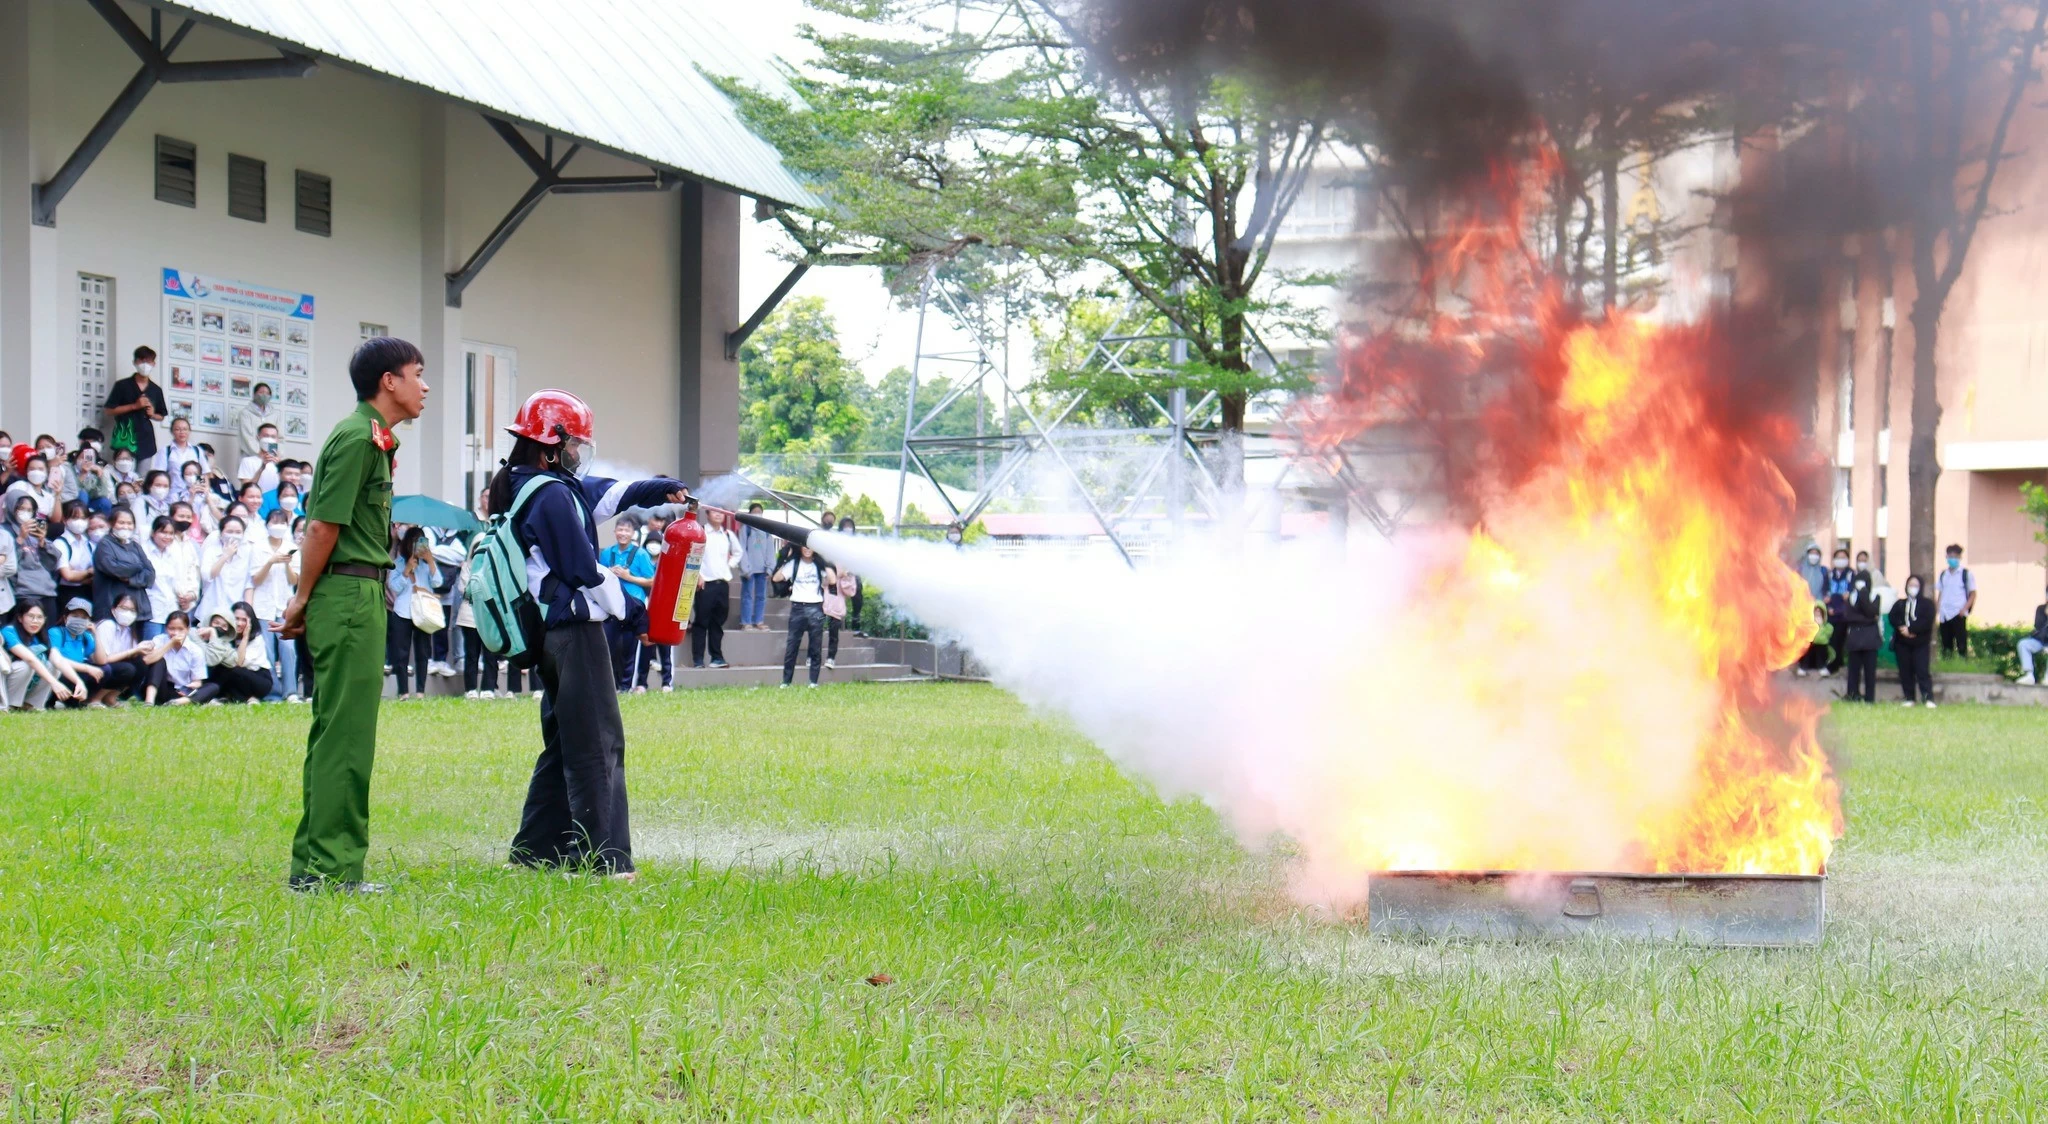 Sinh viên được hướng dẫn thực hành dập tắt đám cháy bằng bình cứu hỏa (ảnh: CTV)